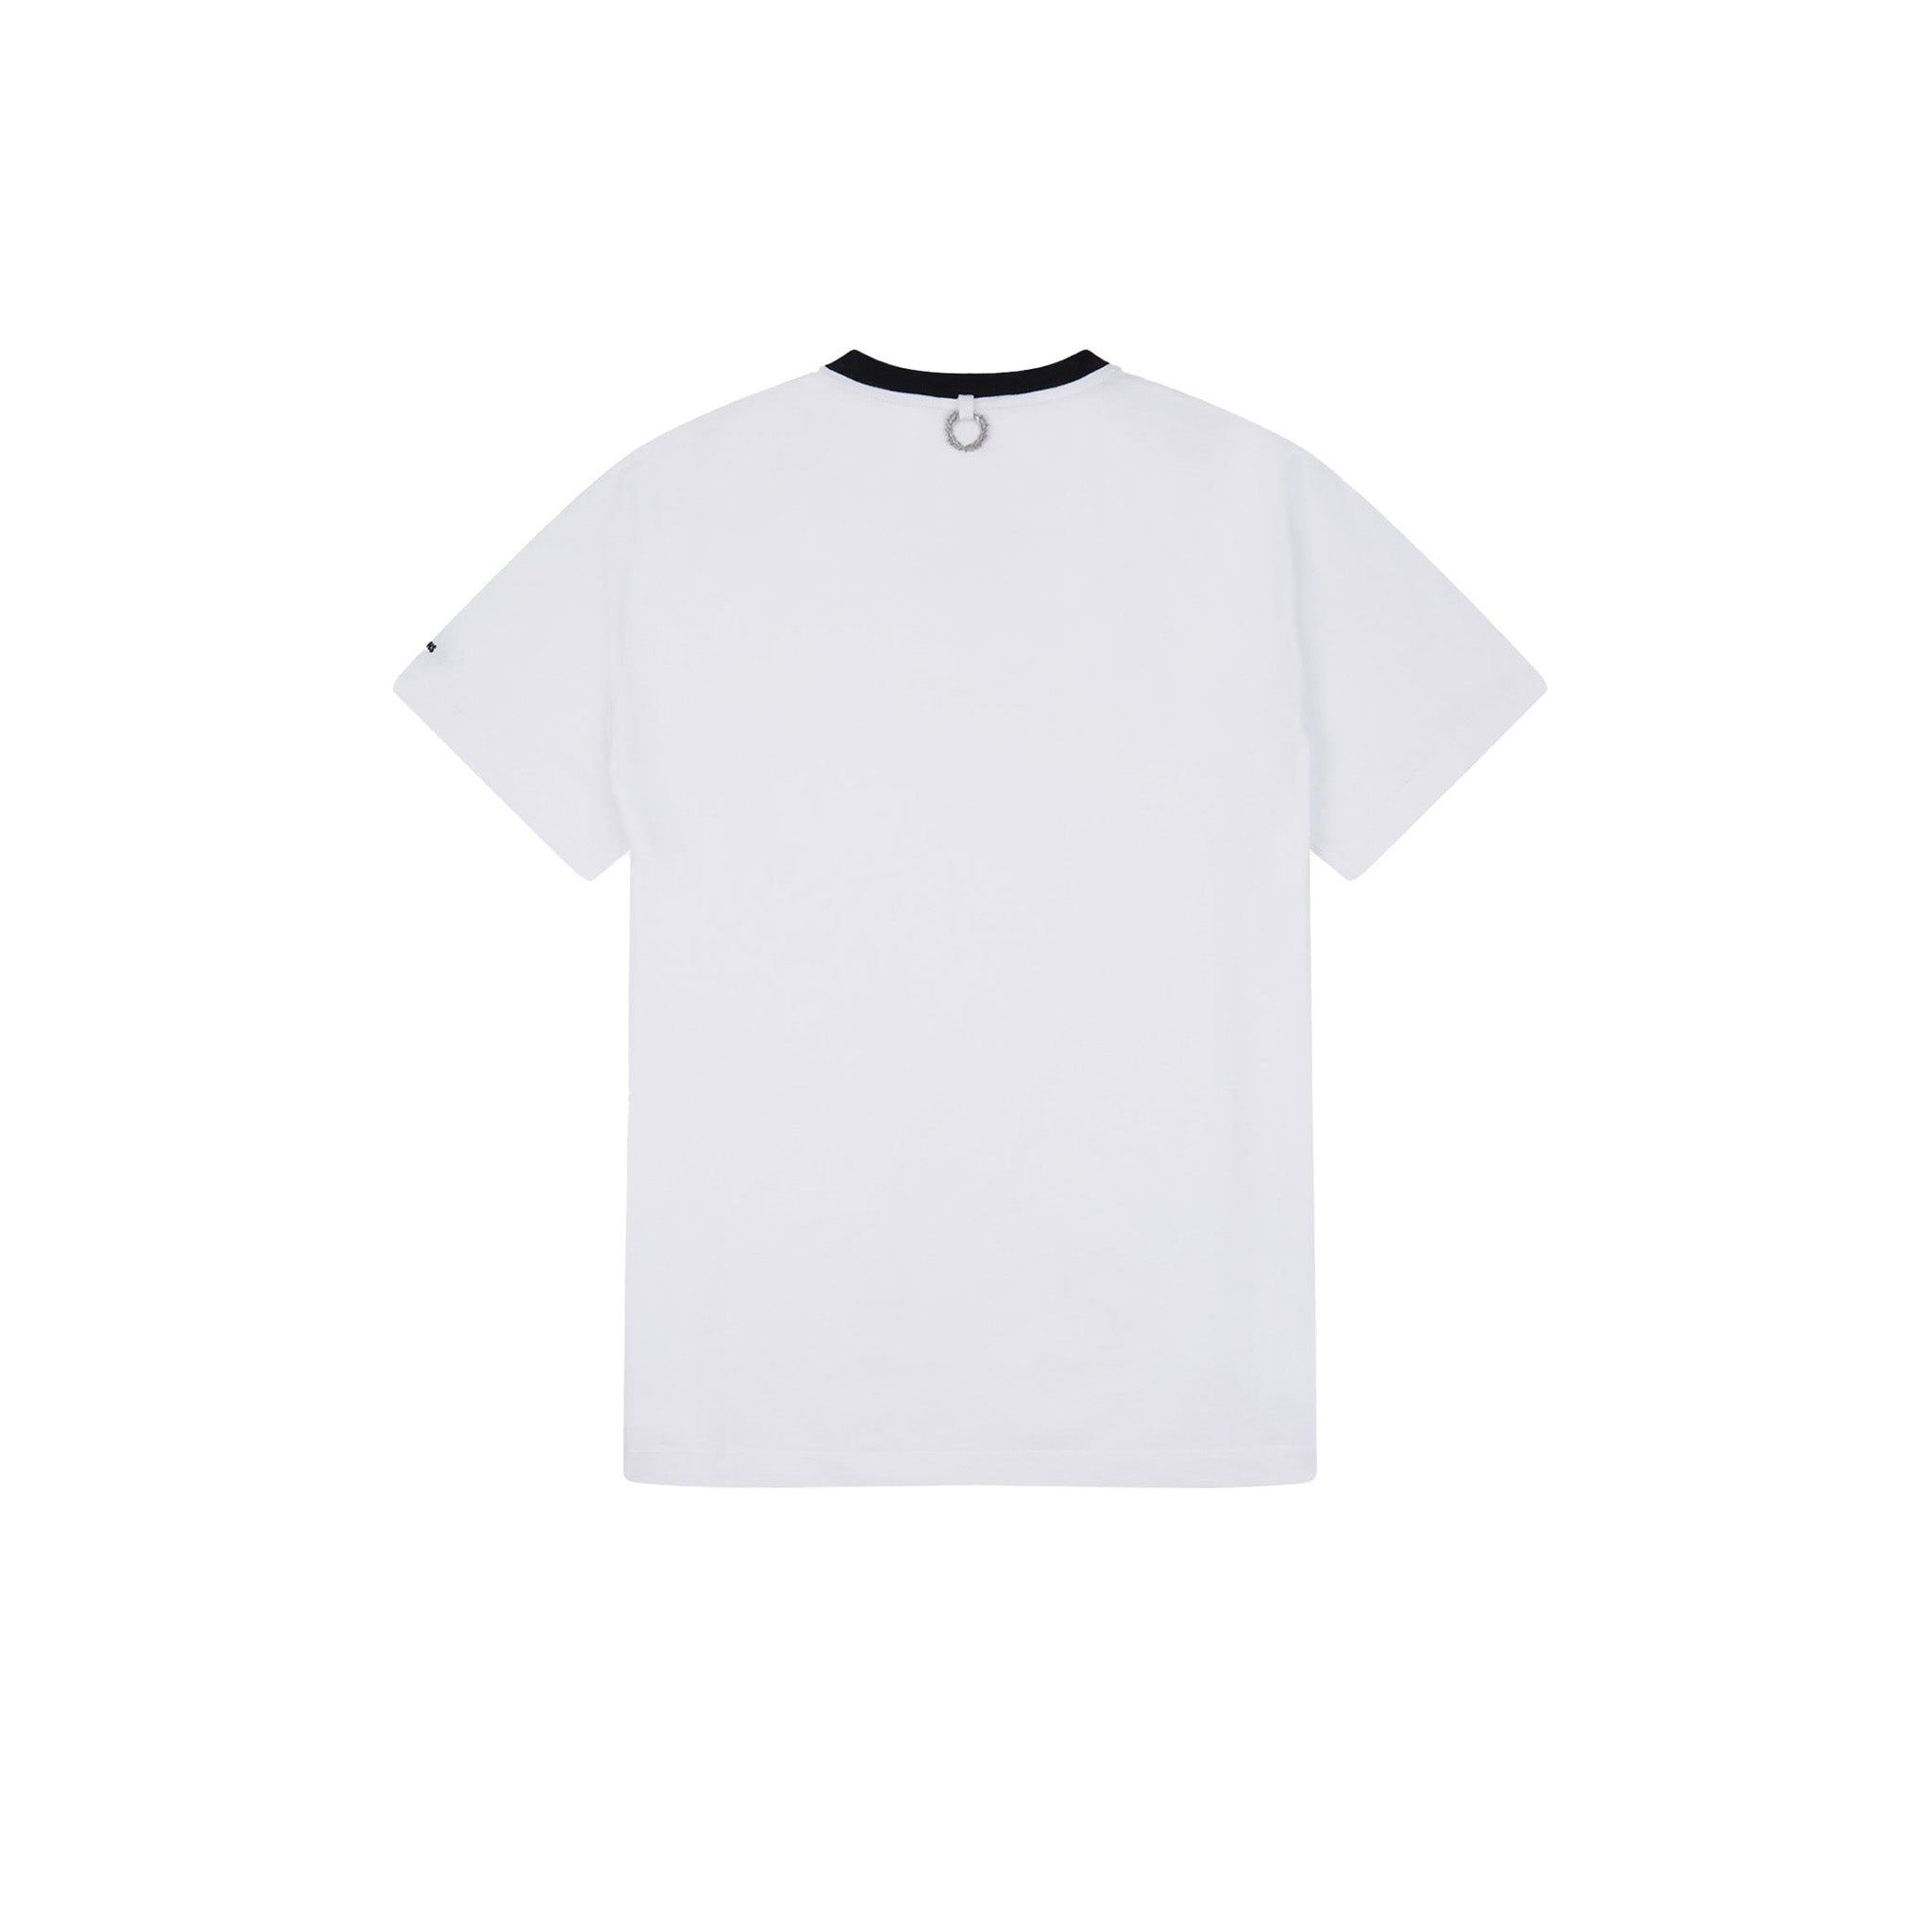 Fred Perry x Raf Simons Contrast Rib Slim Fit T-Shirt White